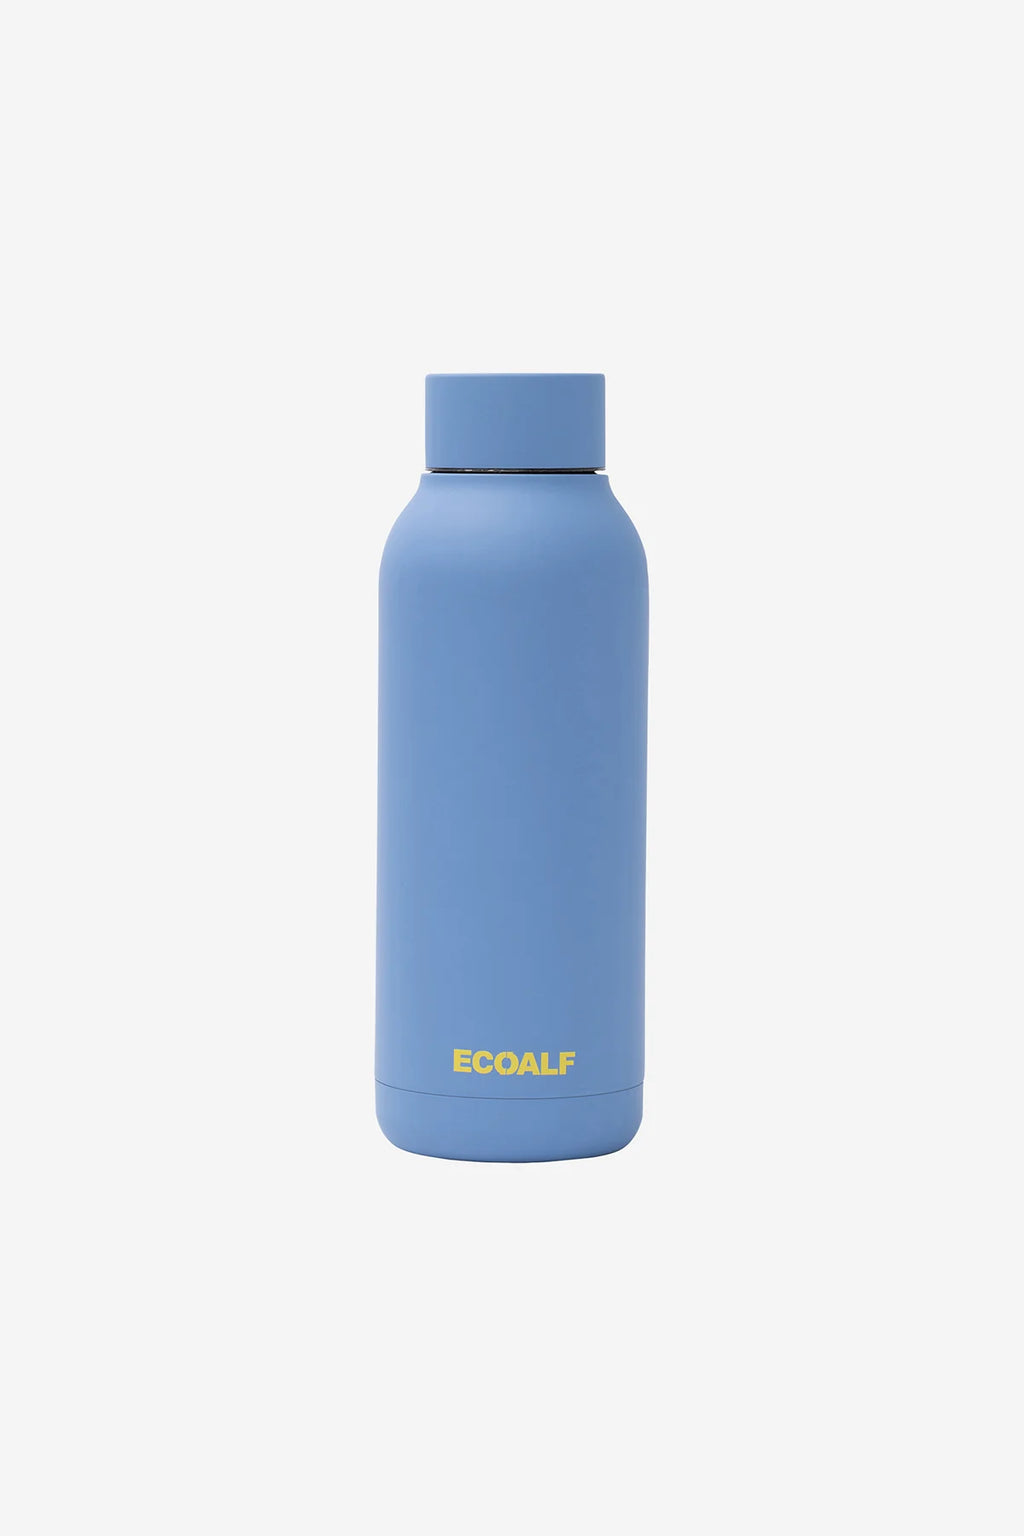 Ecoalf - Bronson Stainless Steel Bottle Blue